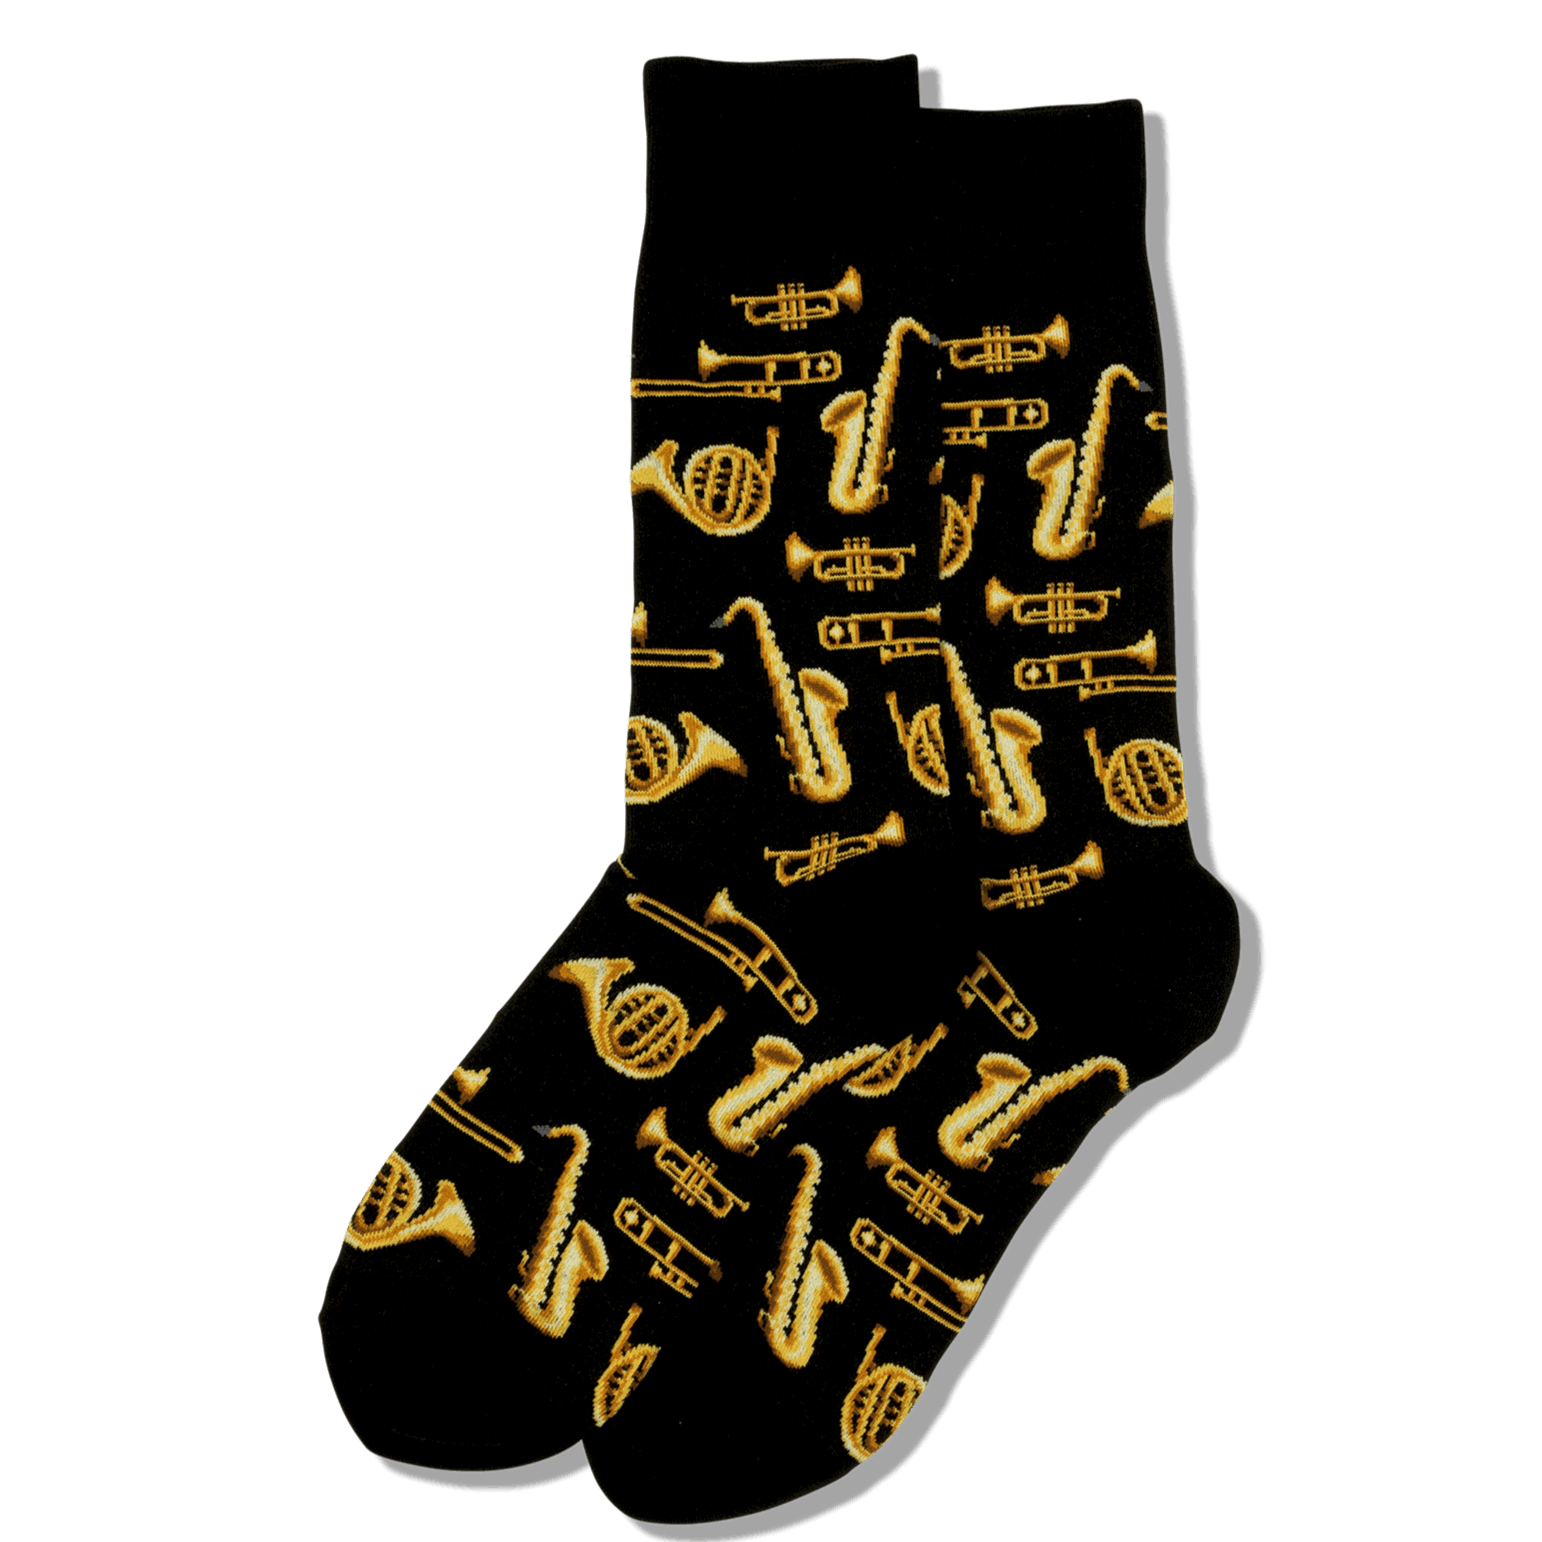 Jazz Instruments Socks Men's Crew Sock Black